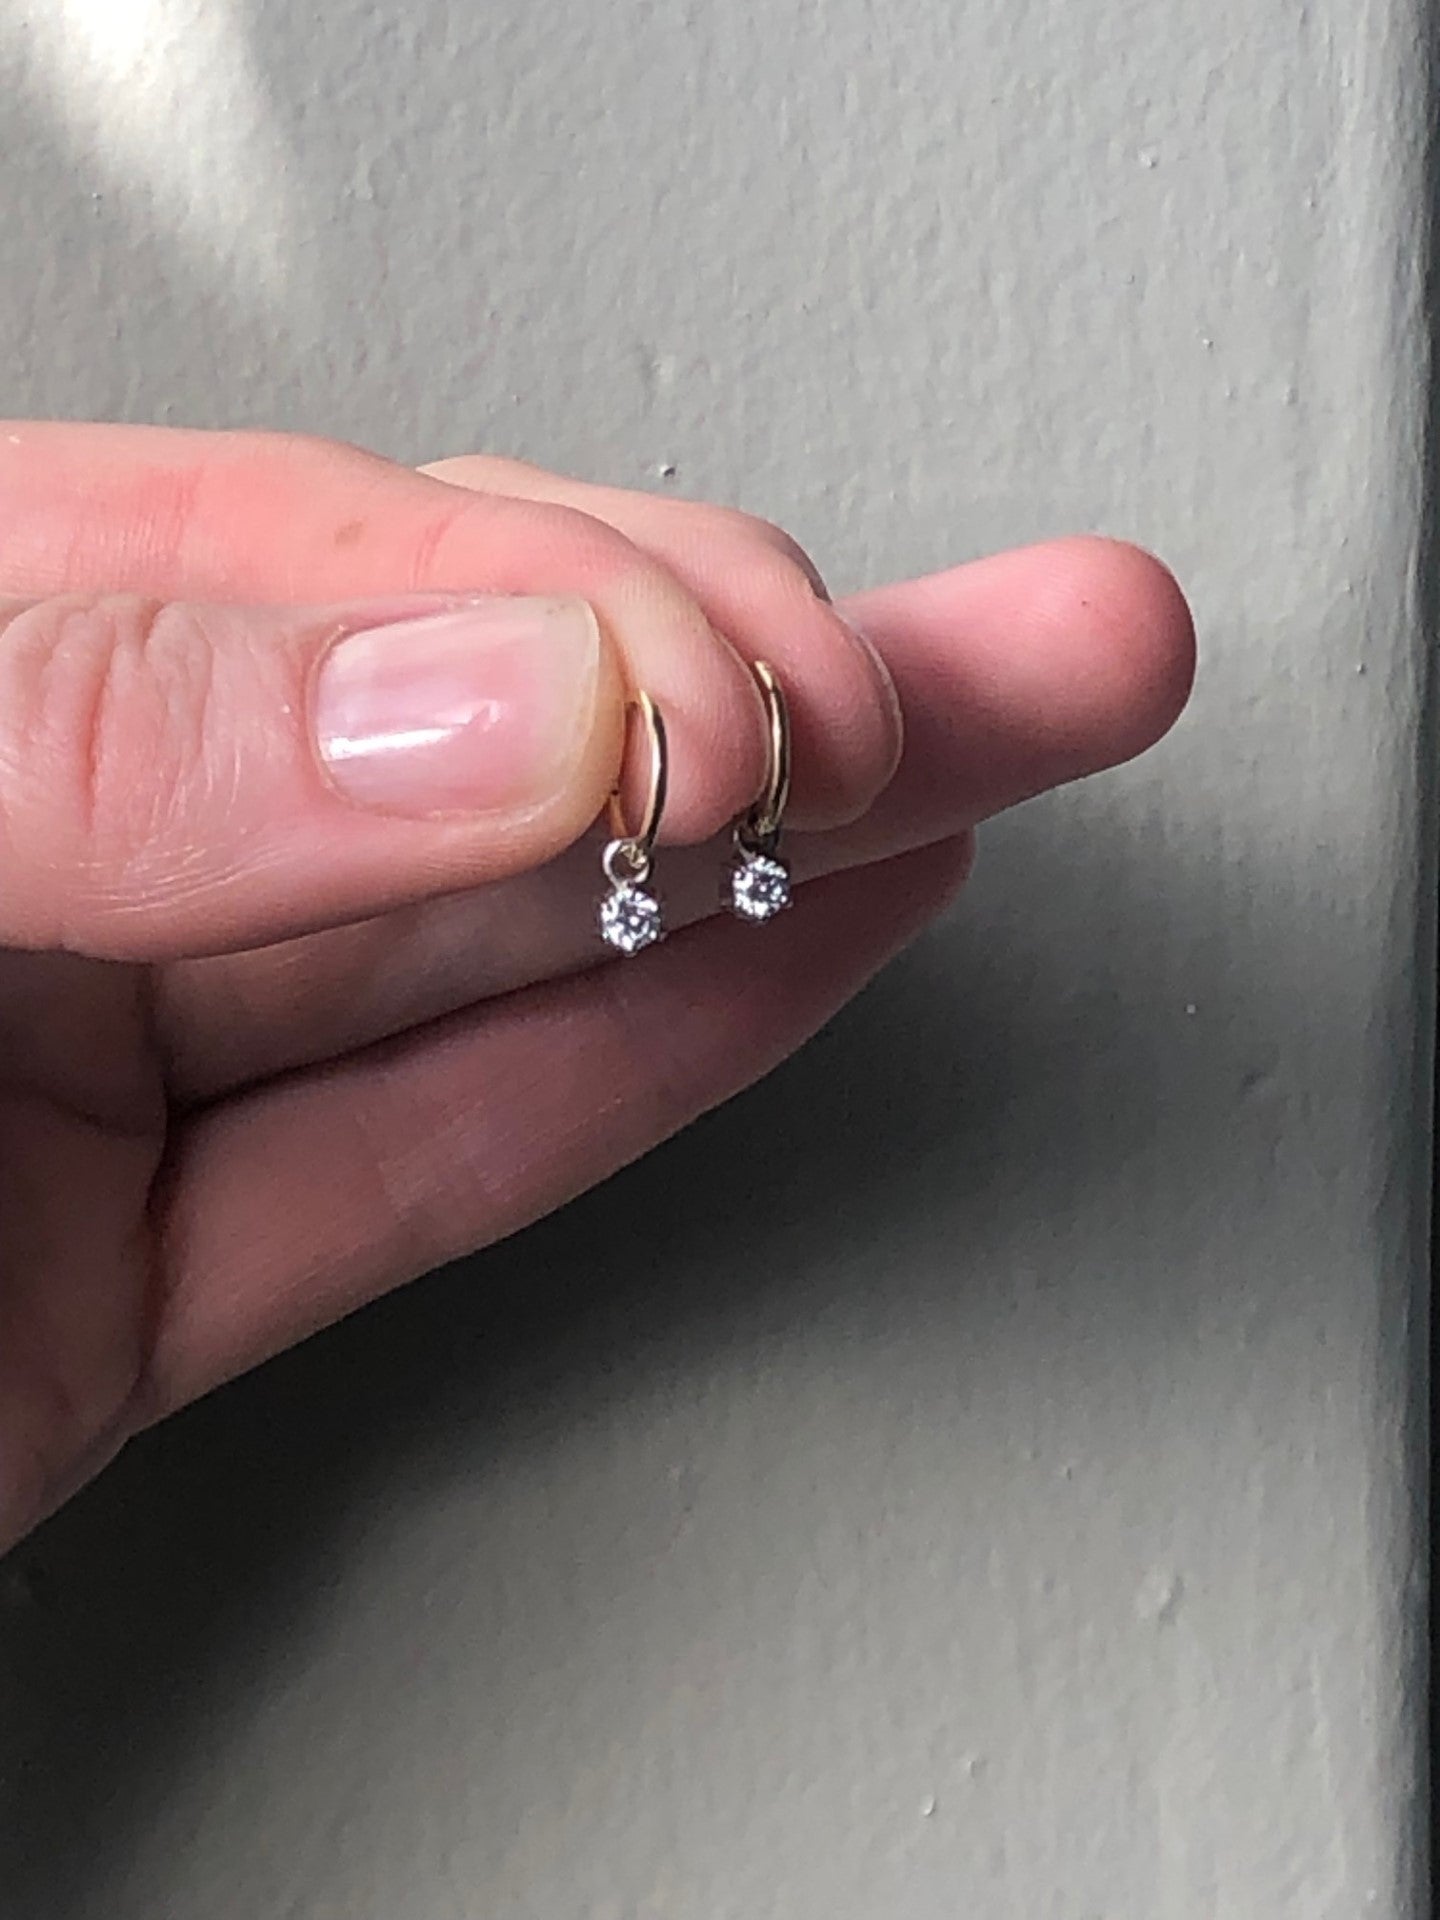 gold hoop diamond star earrings in fingers